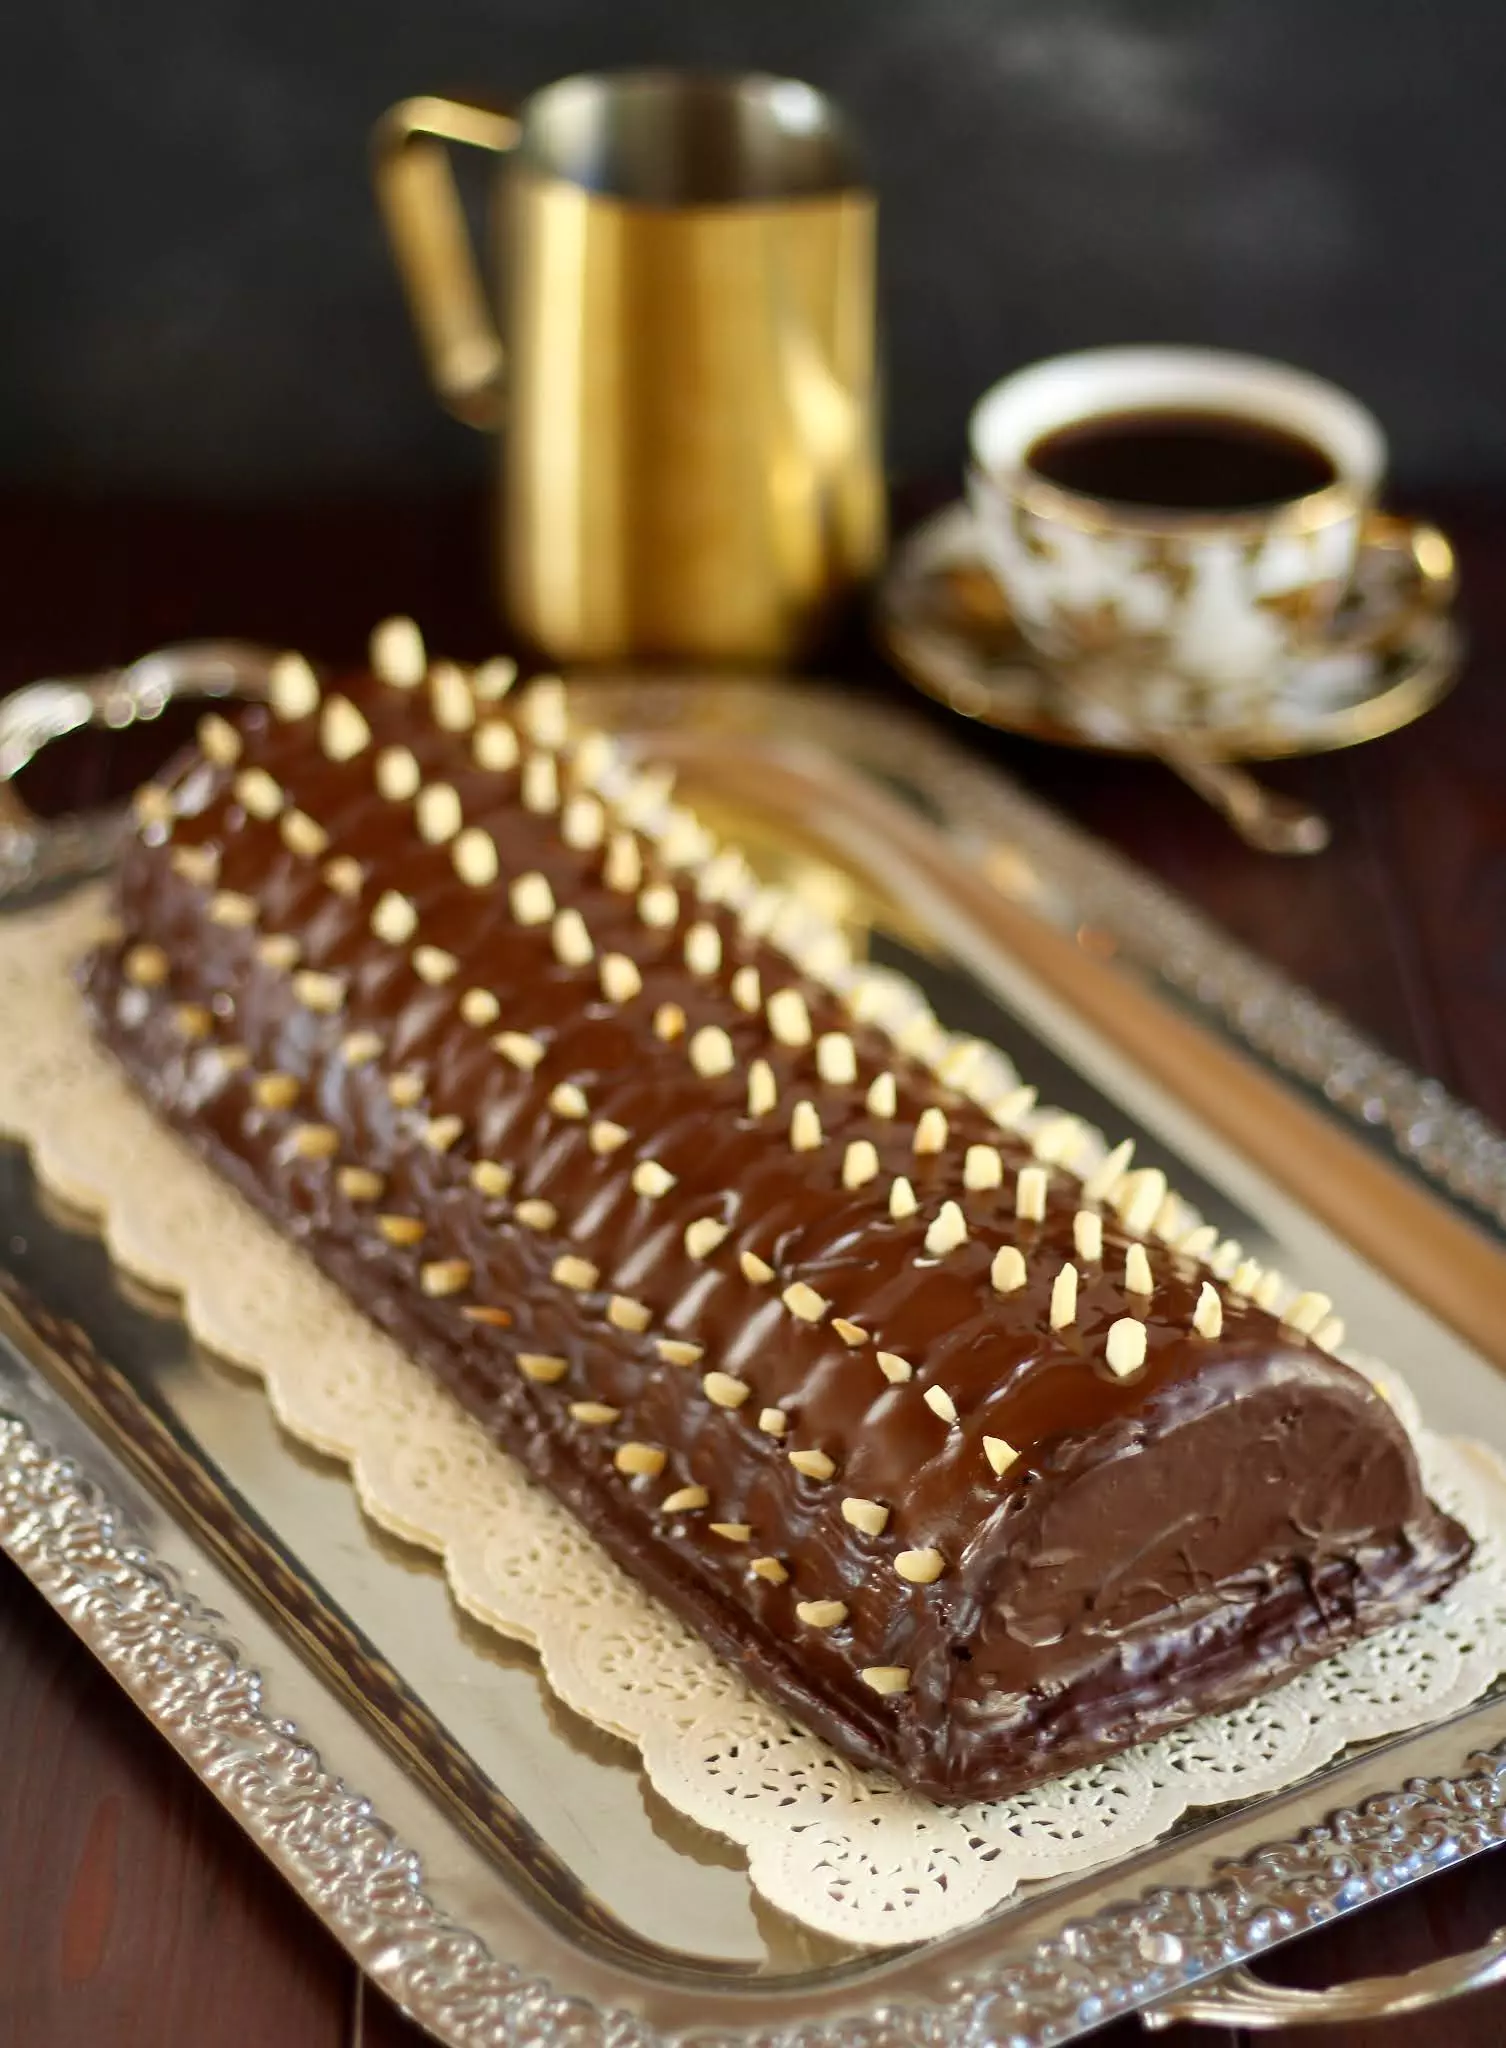 Saftigster Rehrücken Kuchen mit Schokolade und Mandeln | Rezept und Video von Sugarprincess